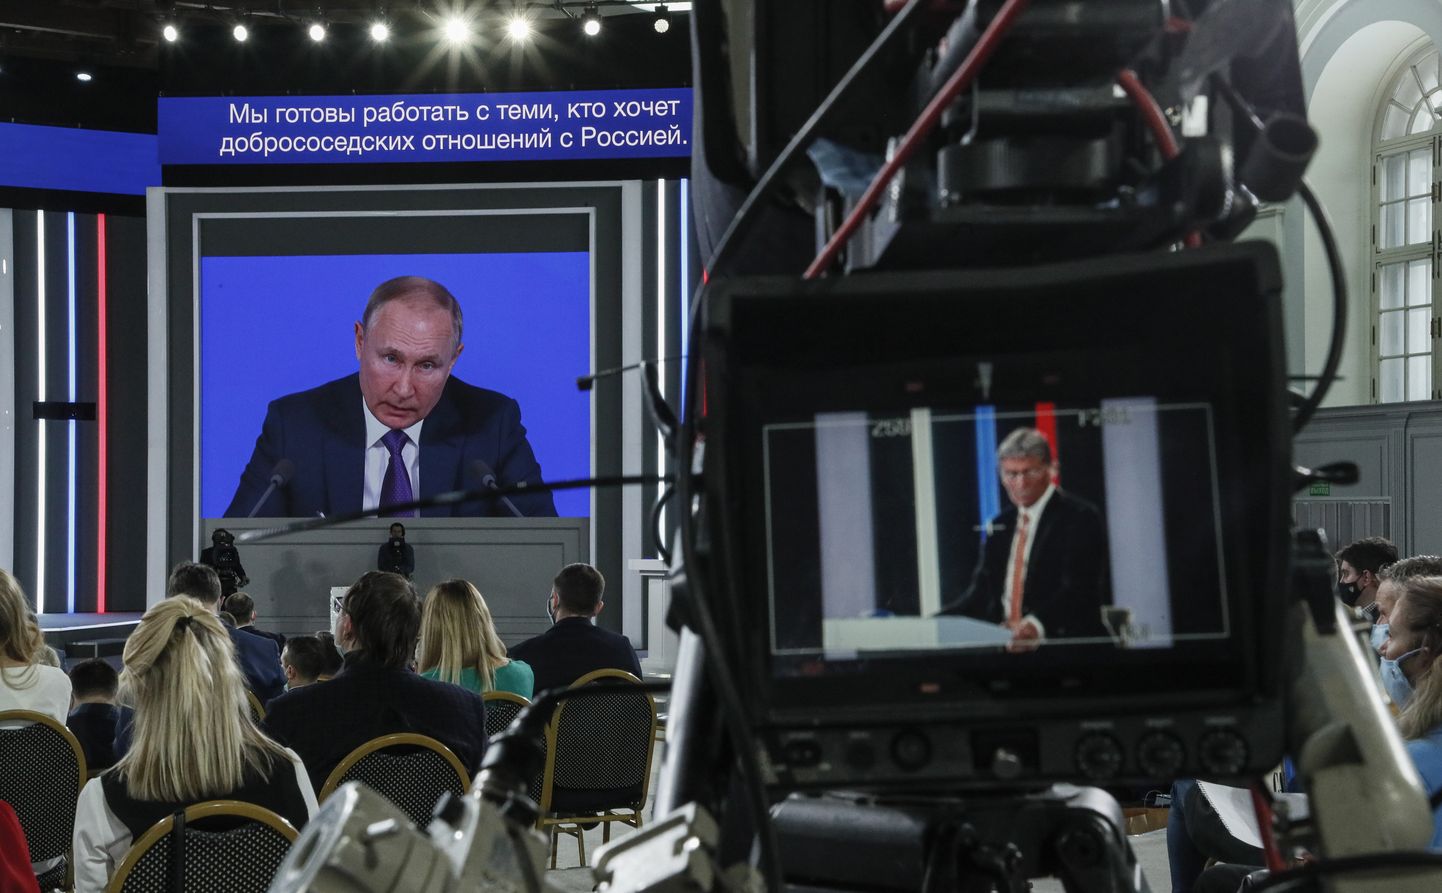 Venemaa president Vladimir Putin tänasel aastalõpu pressikonverentsil.